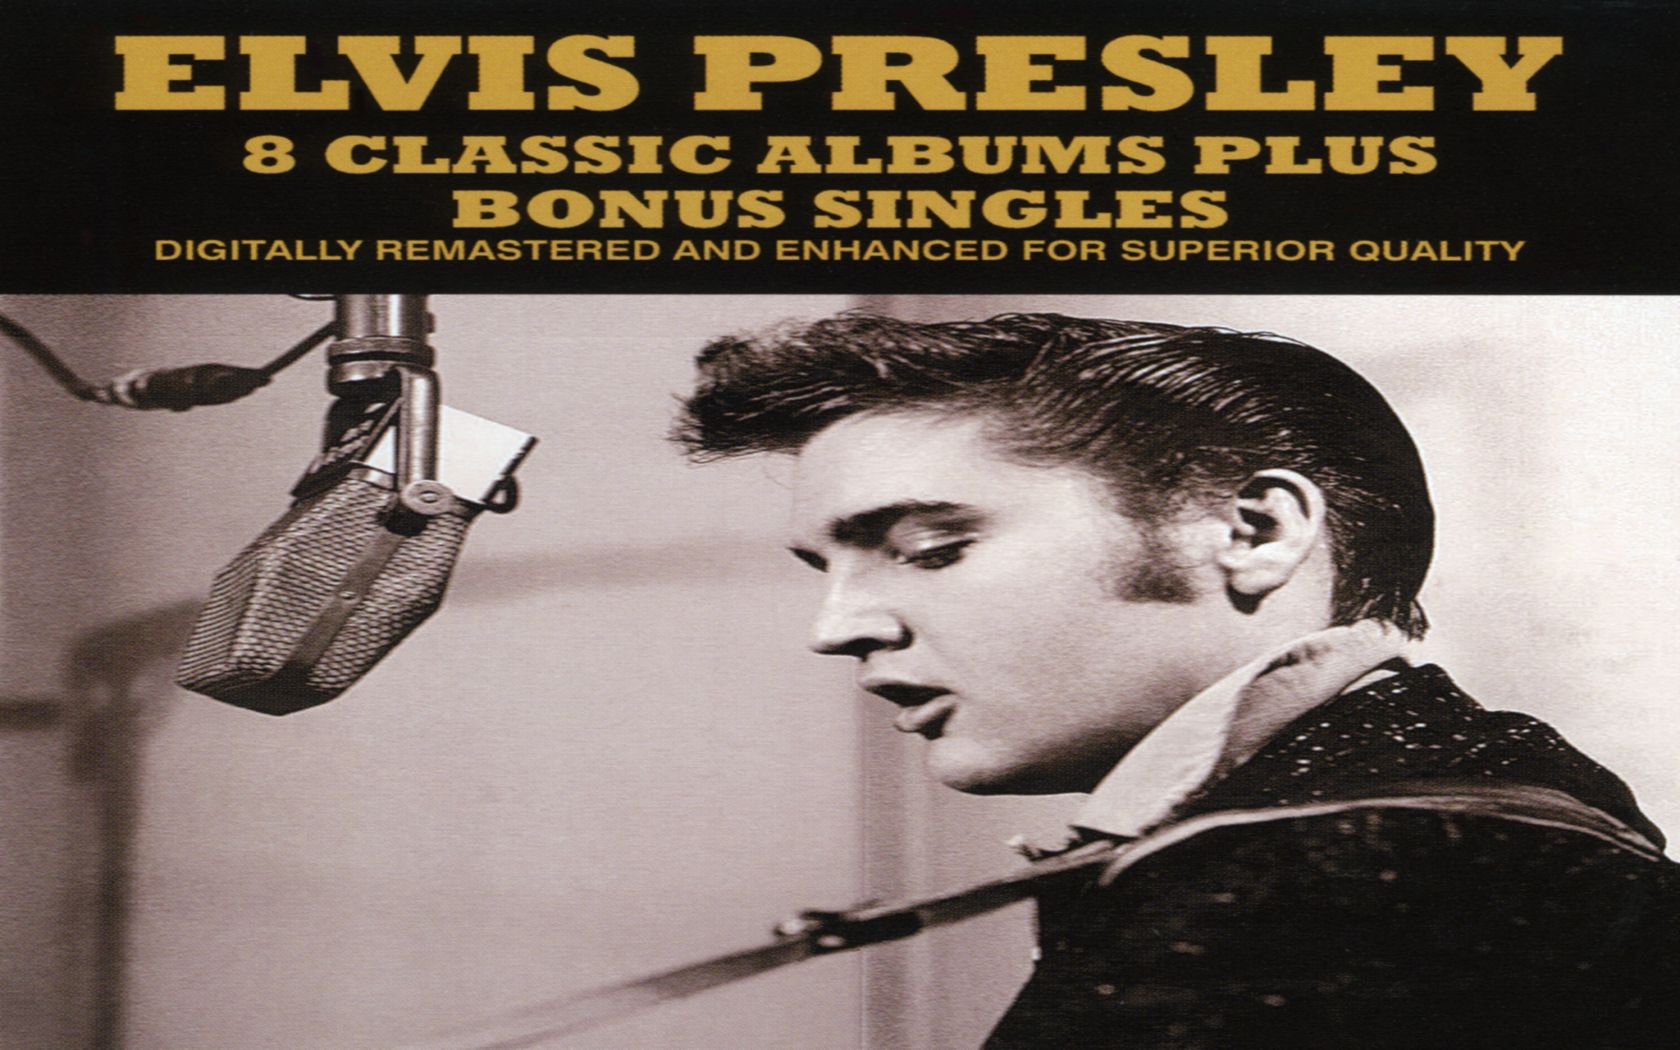 Baixe gratuitamente a imagem Música, Rock & Roll, Elvis Presley, O Rei na área de trabalho do seu PC